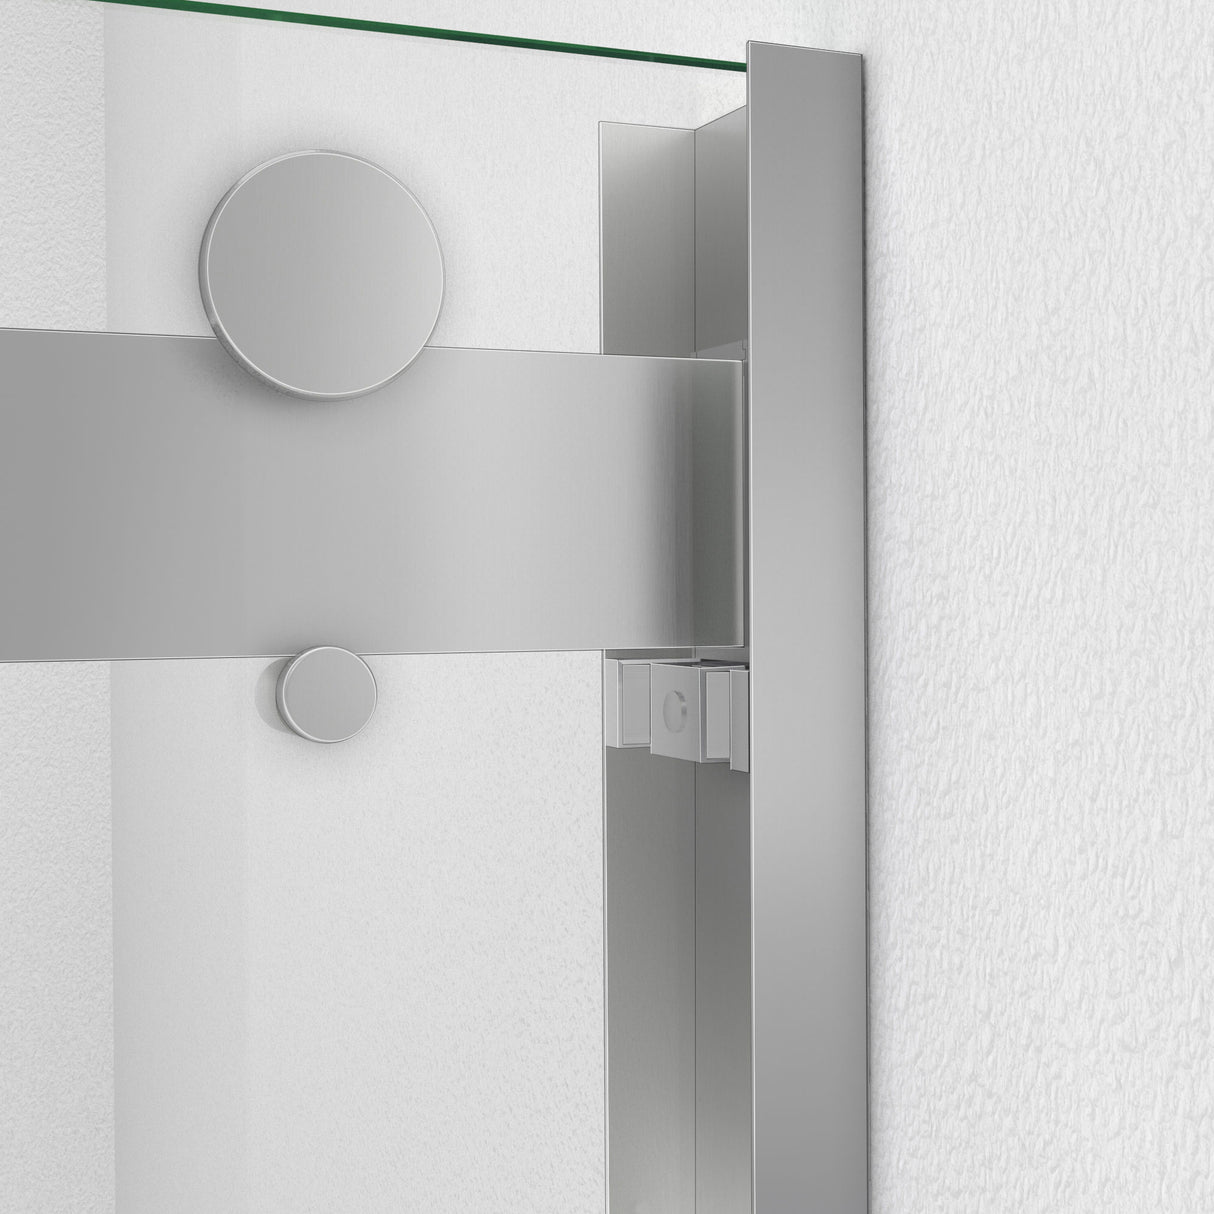 DreamLine Essence-H 56-60 in. W x 76 in. H Semi-Frameless Bypass Shower Door in Brushed Nickel